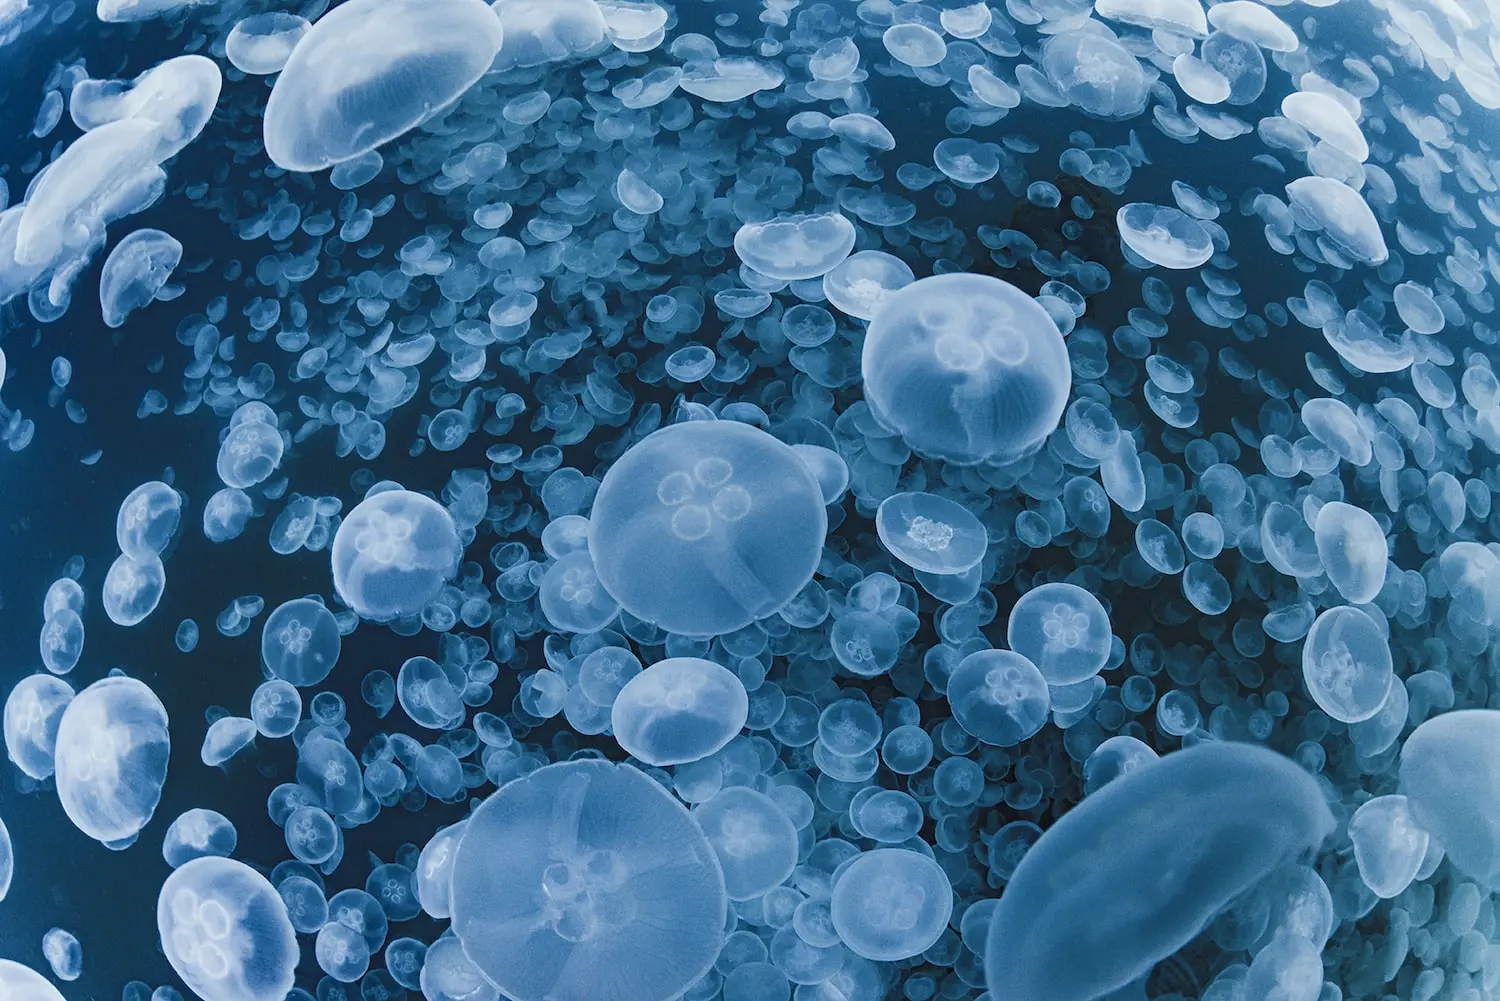 Photography of a school of white jellyfish underwater, taken by Daisuke Kurashima